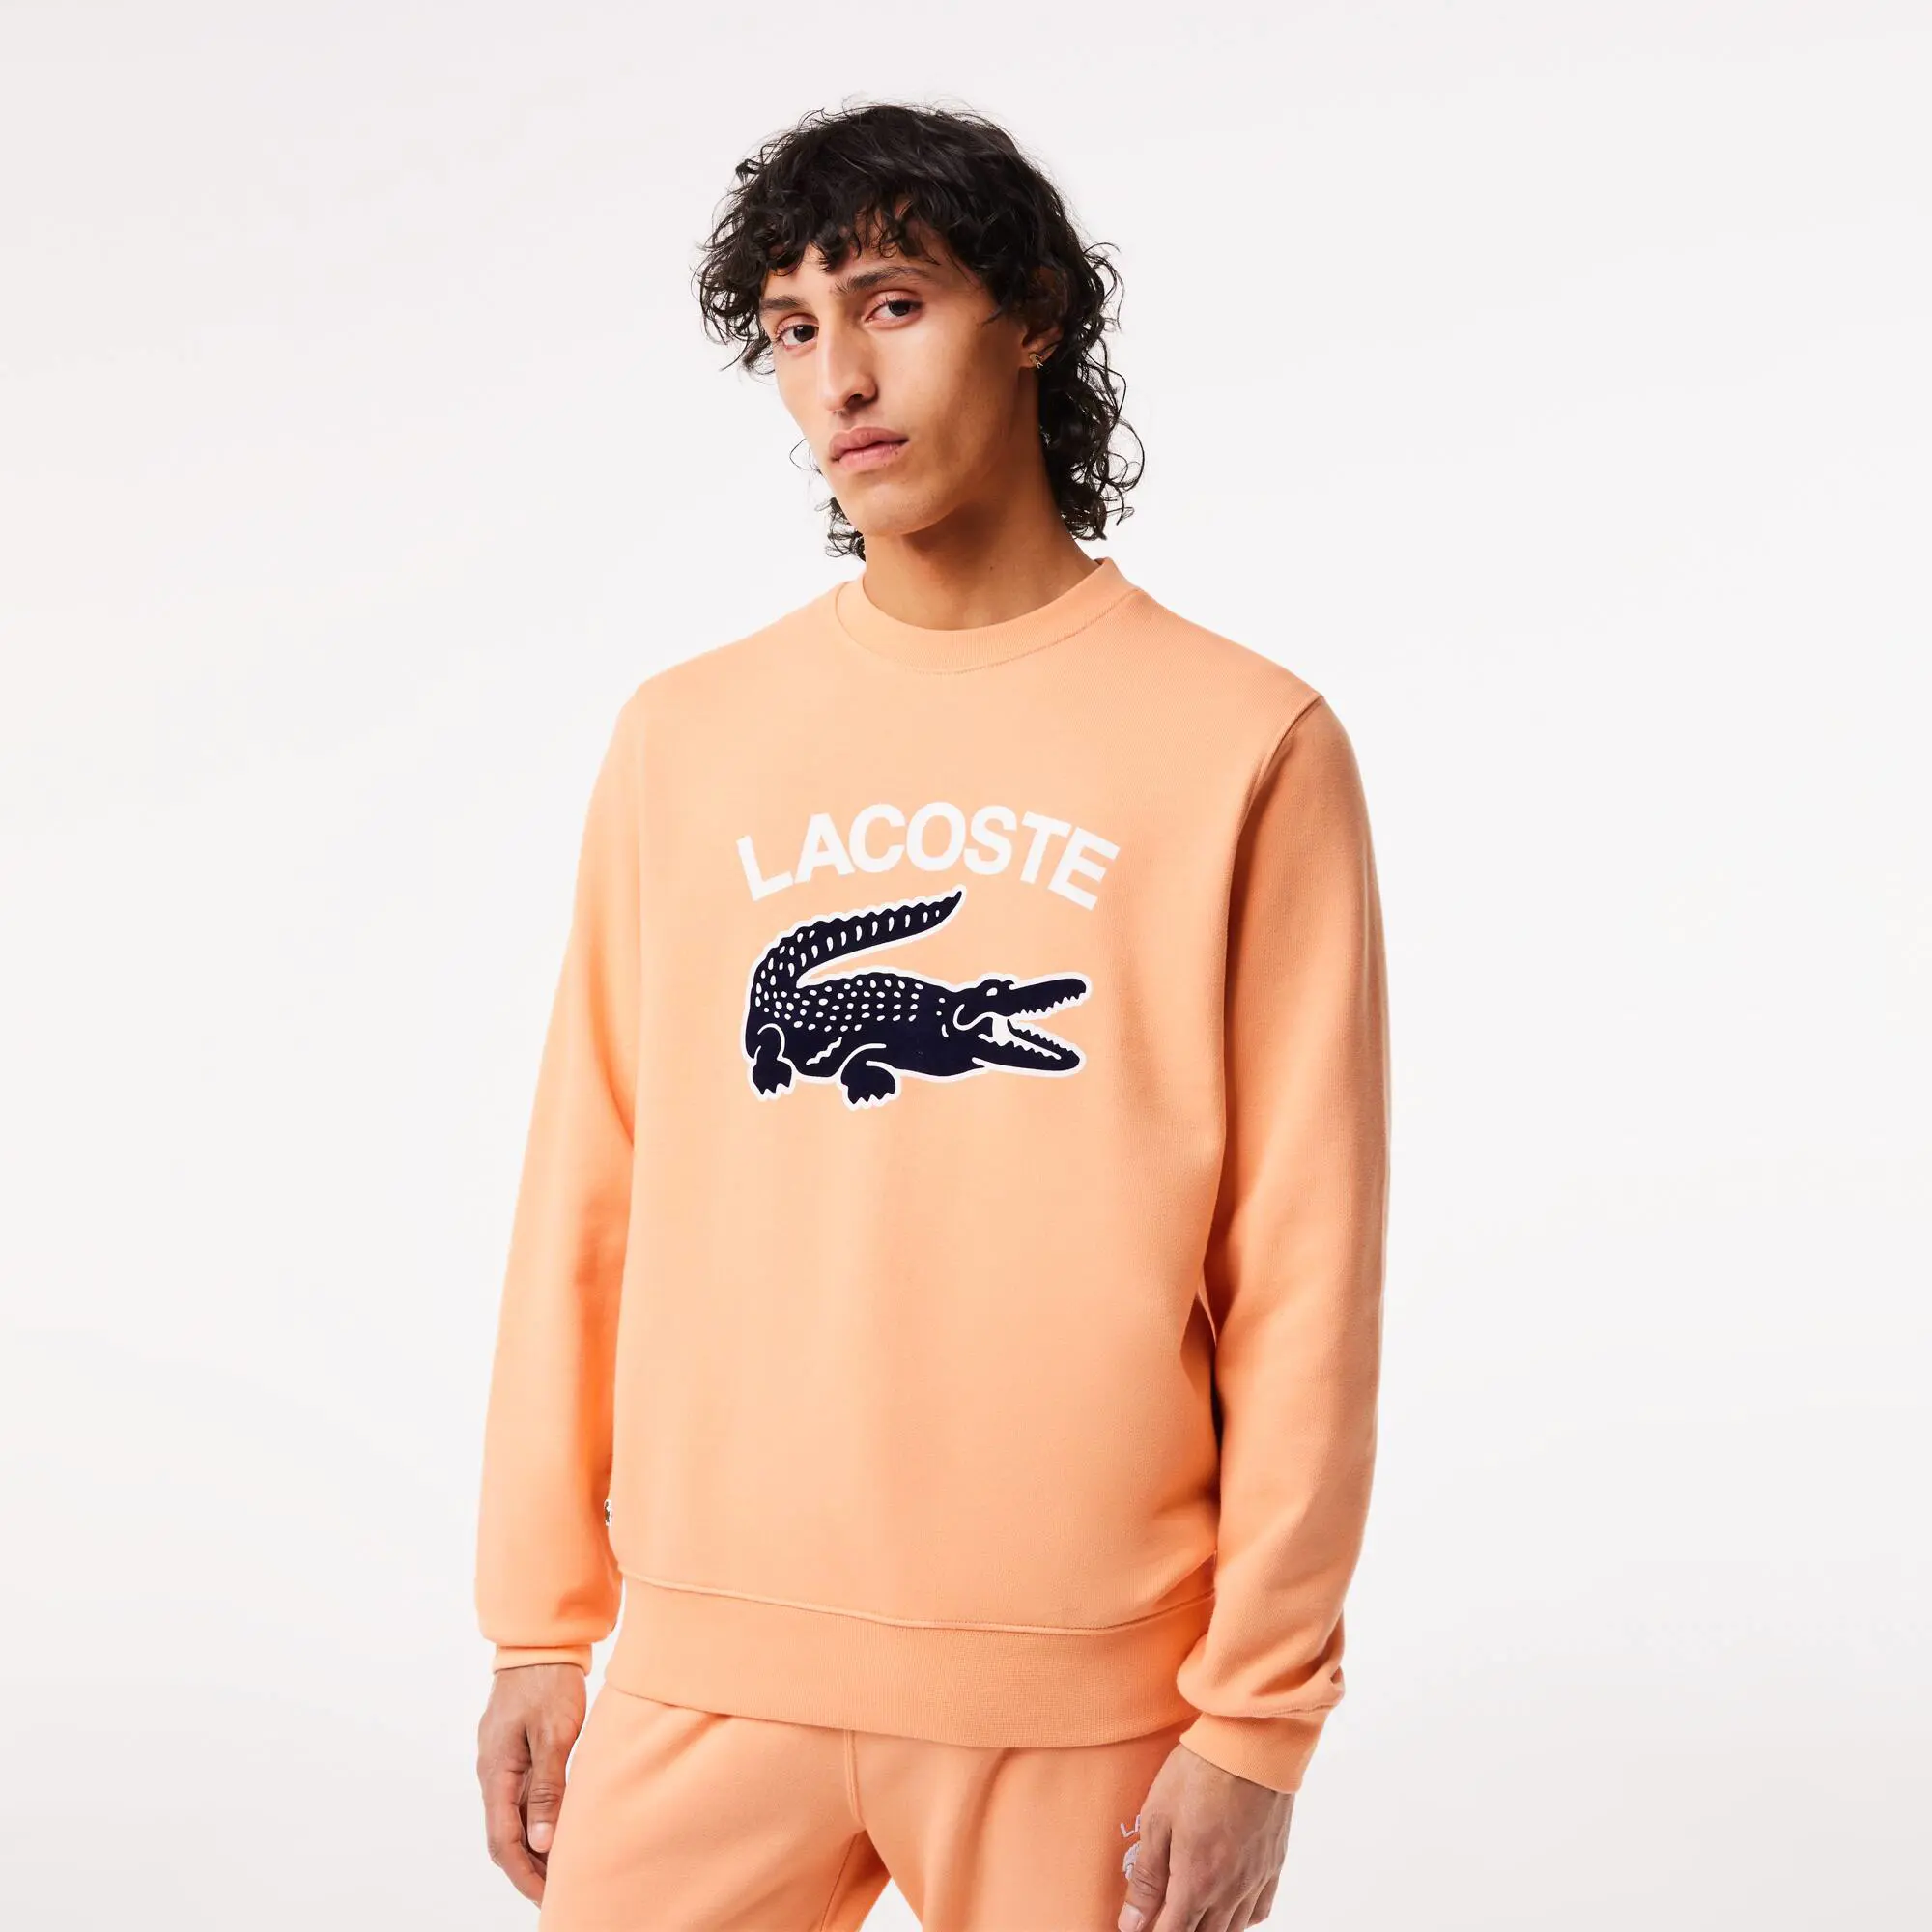 Lacoste Sweatshirt de decote redondo com estampado do crocodilo Lacoste para homem. 1